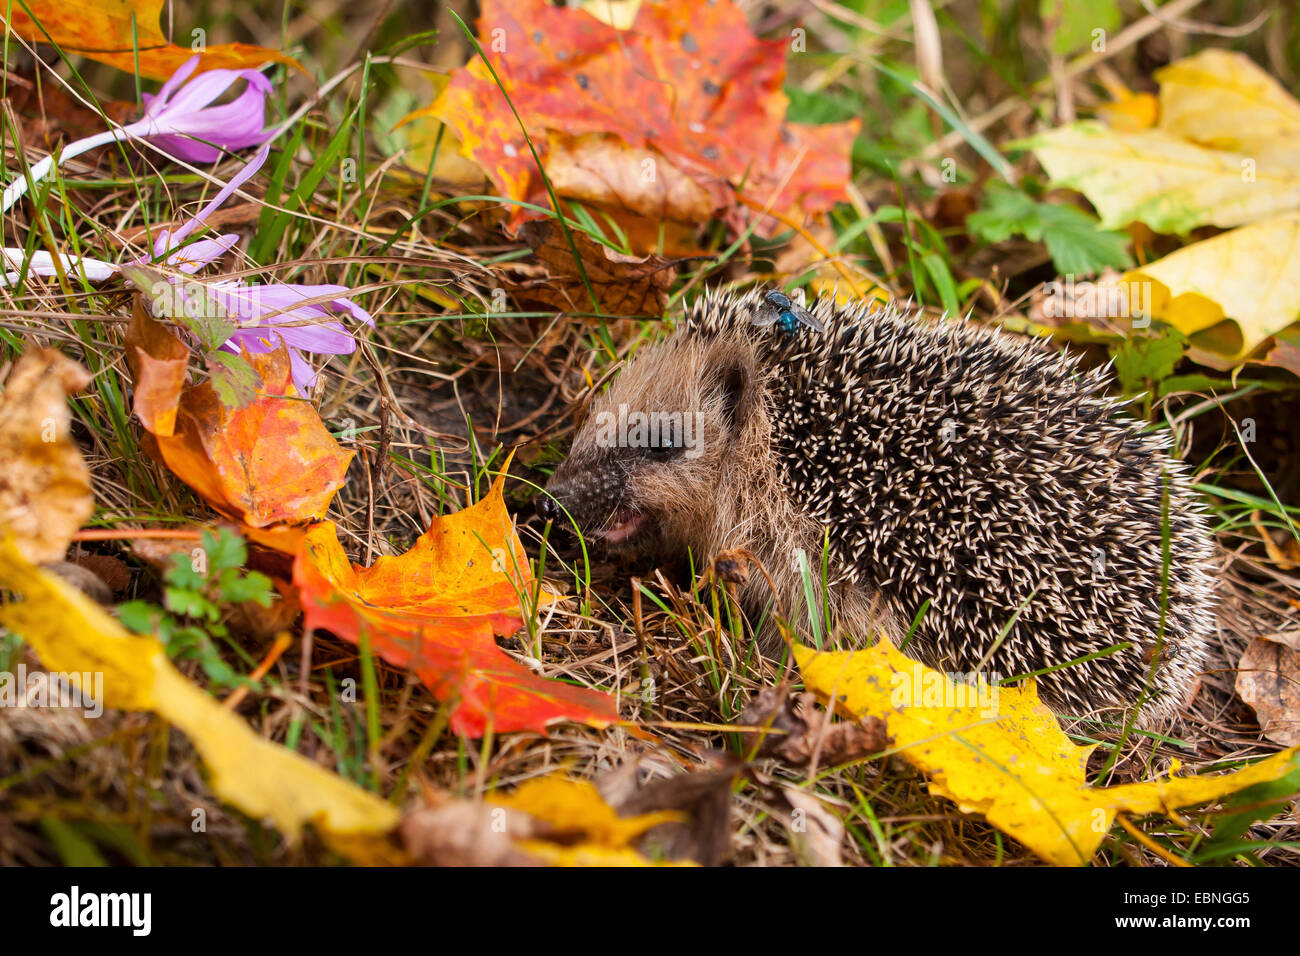 Western hedgehog, European hedgehog (Erinaceus europaeus), young hedgehog in food intake in autumn, Switzerland, Sankt Gallen Stock Photo